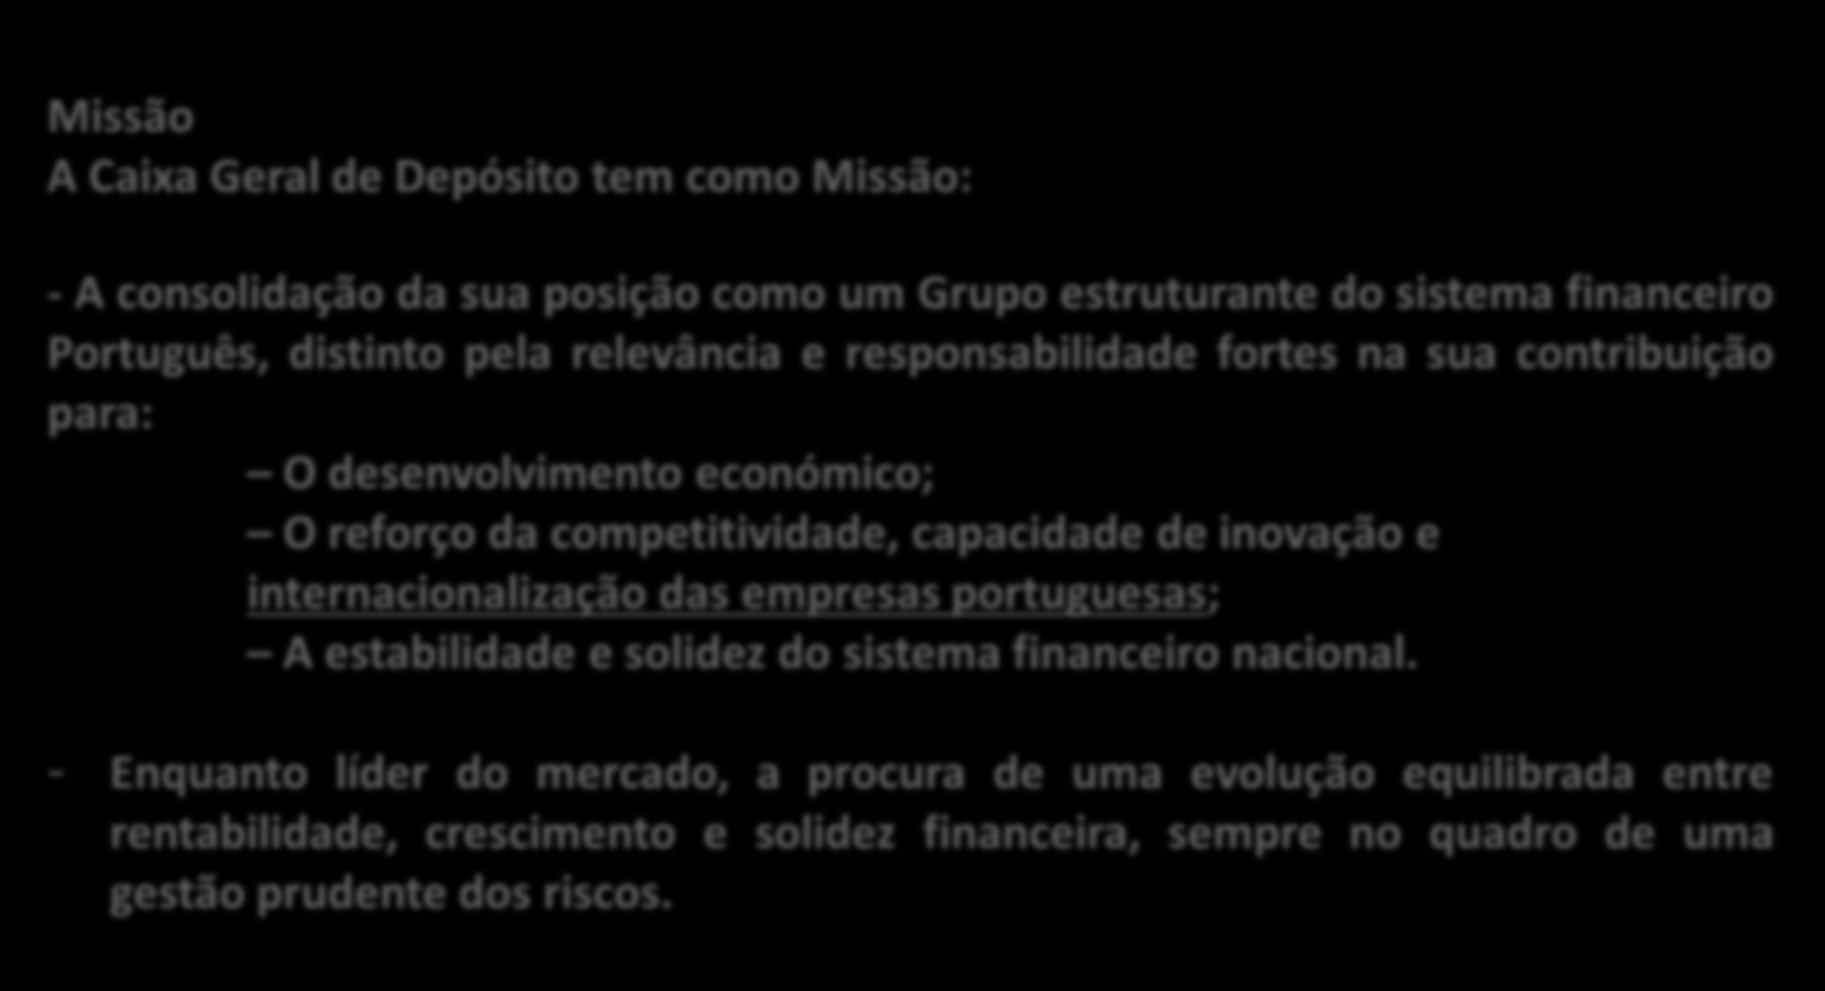 Missão e Estratégia CGD Missão A Caixa Geral de Depósito tem como Missão: - A consolidação da sua posição como um Grupo estruturante do sistema financeiro Português, distinto pela relevância e